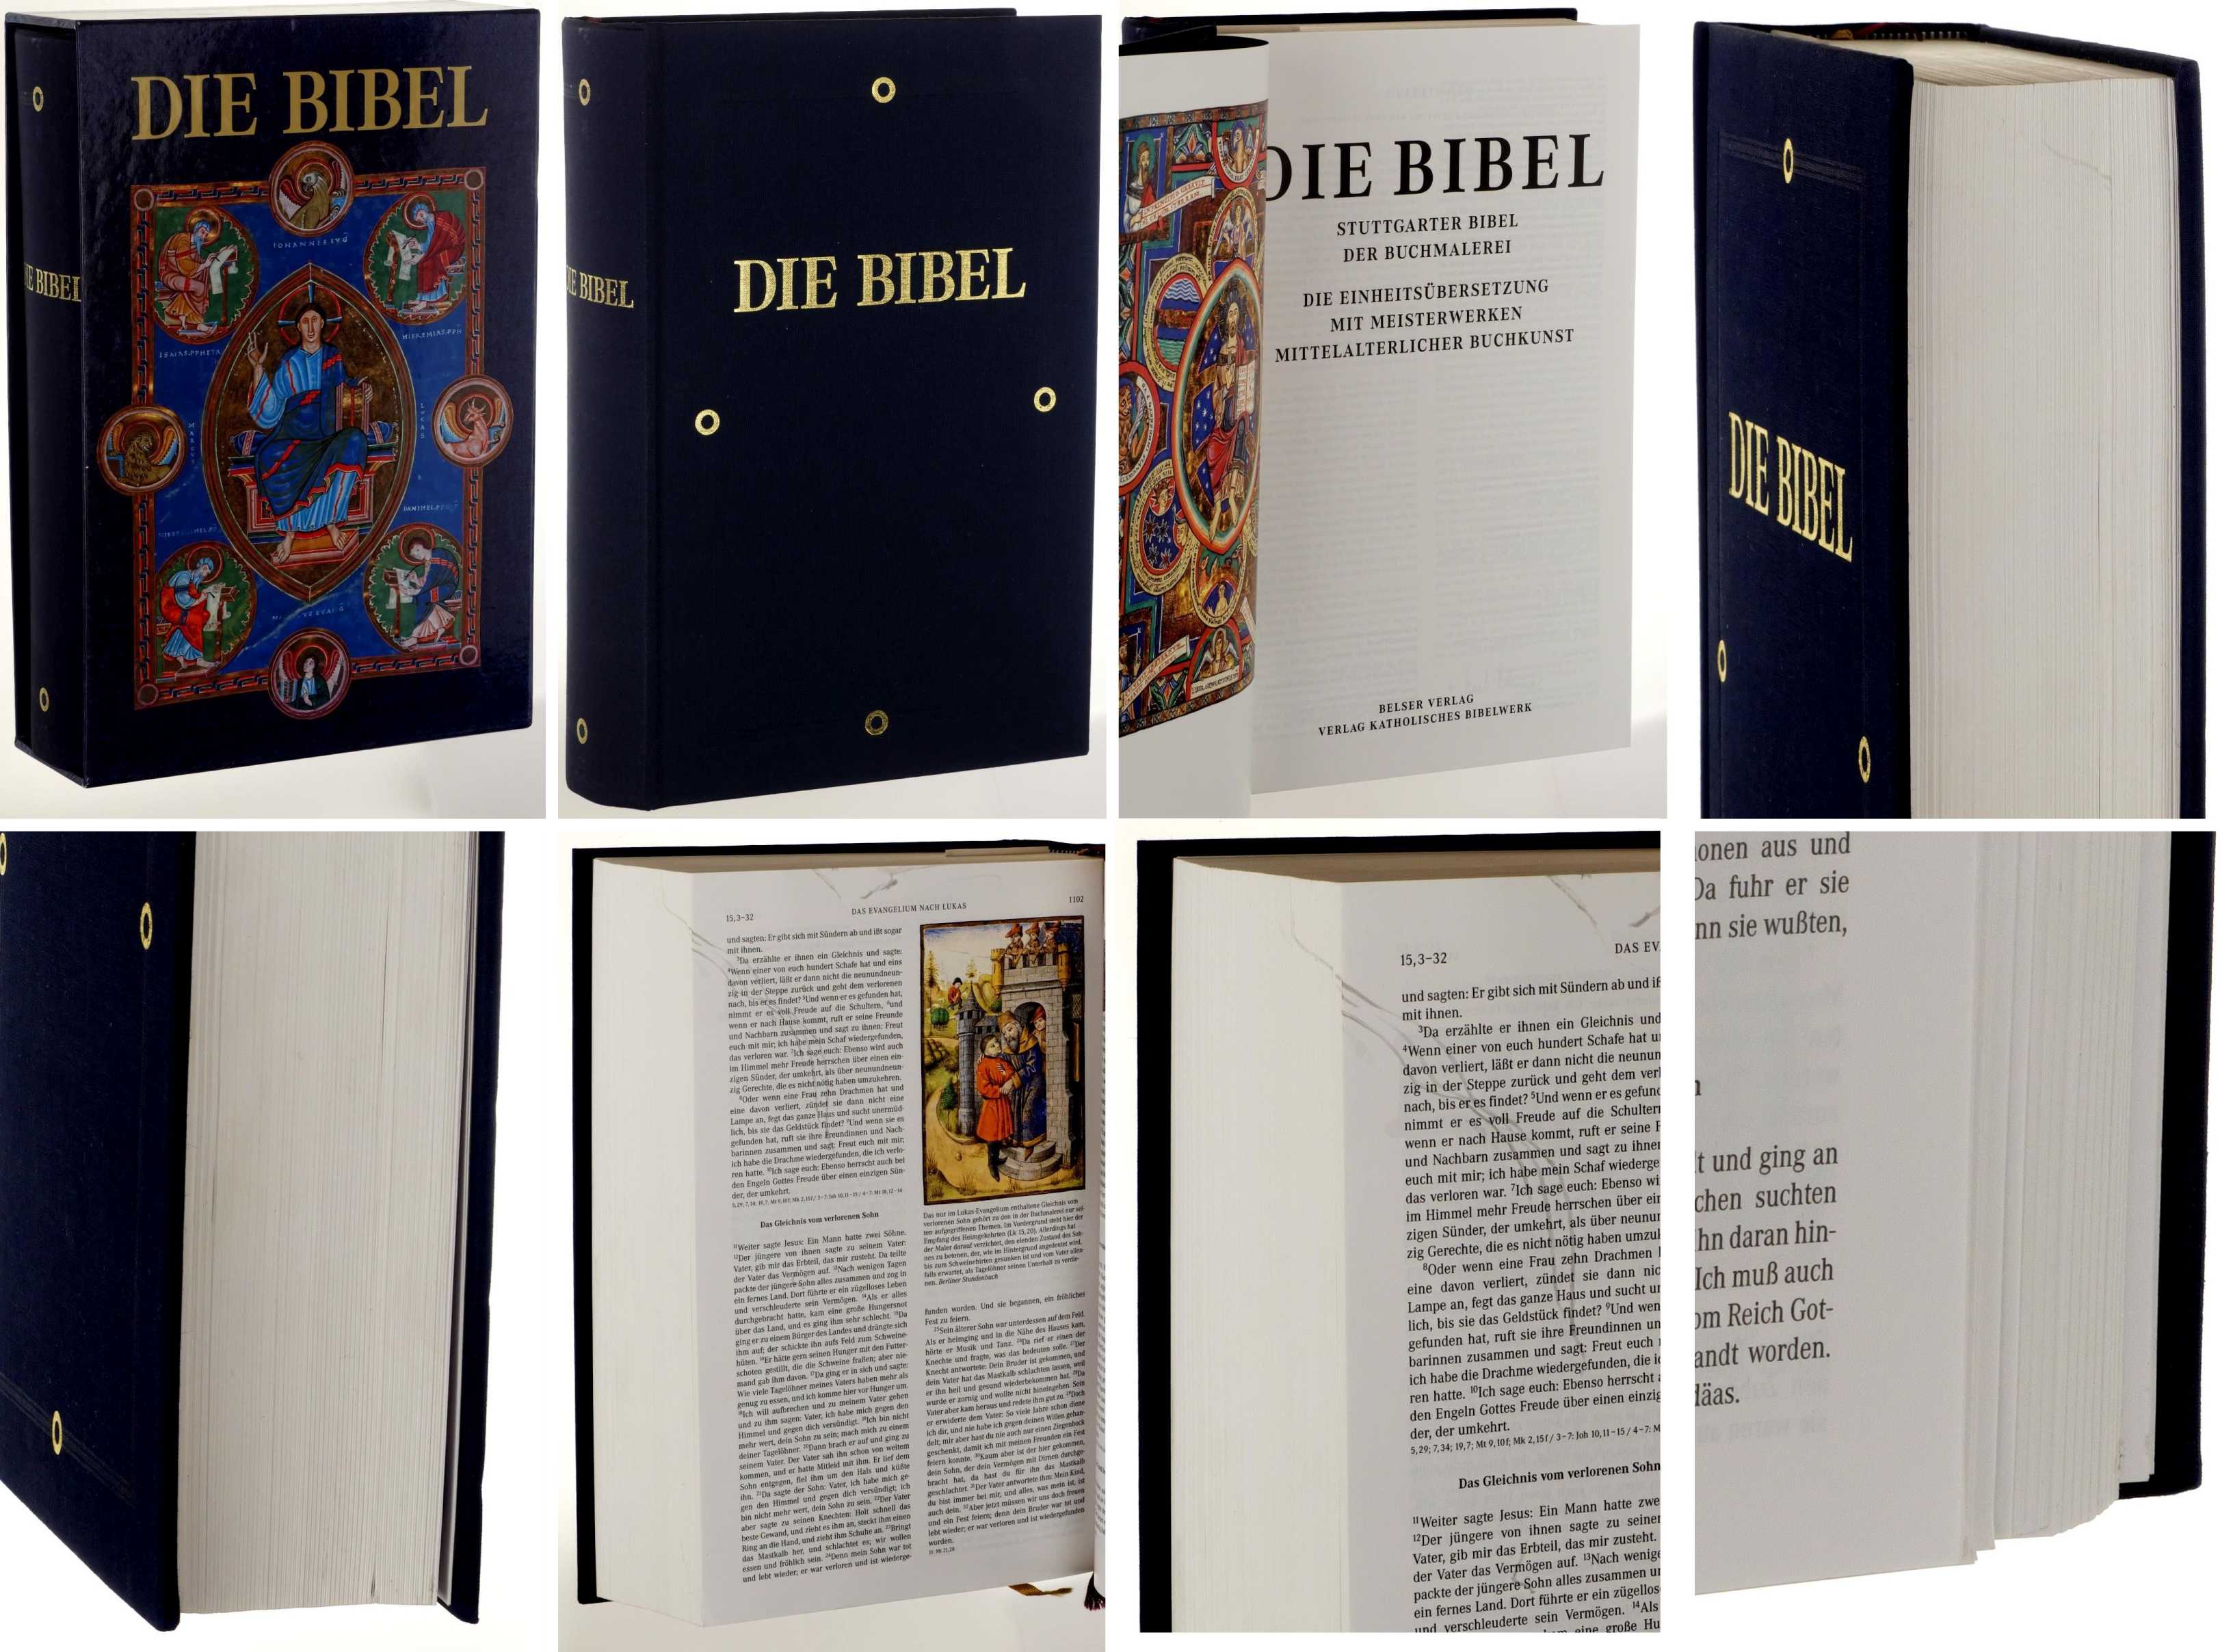   Die Bibel. Stuttgarter Bibel der Buchmalerei. Die Einheitsübersetzung mit Meisterwerken mittelalterlicher Buchkunst. 